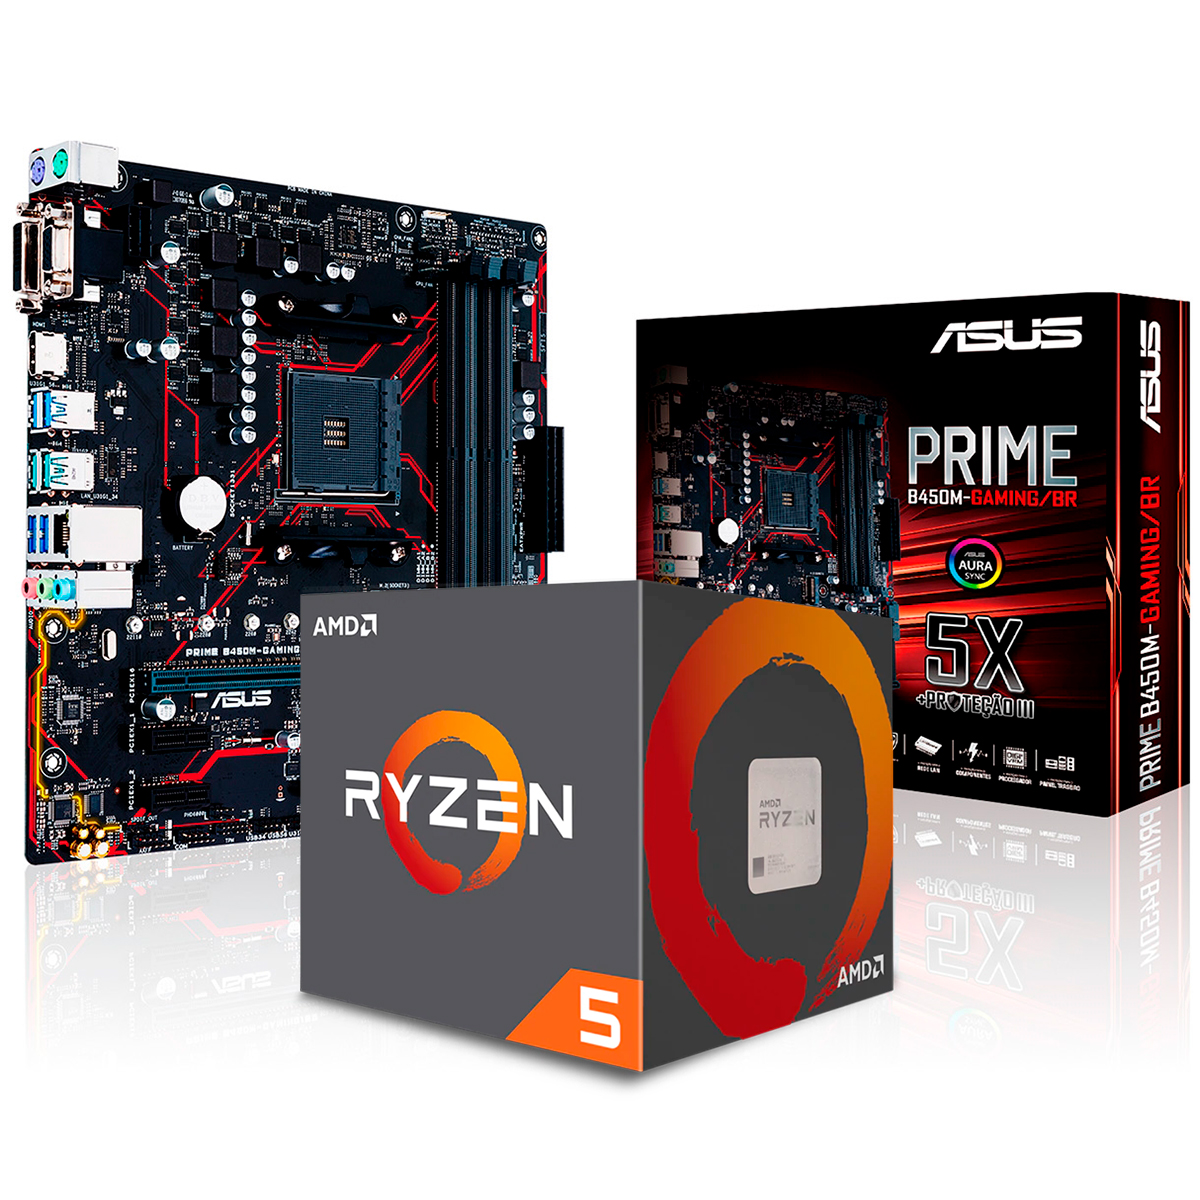 Kit Upgrade AMD Ryzen™ 5 3500X + Asus PRIME B450M GAMING/BR